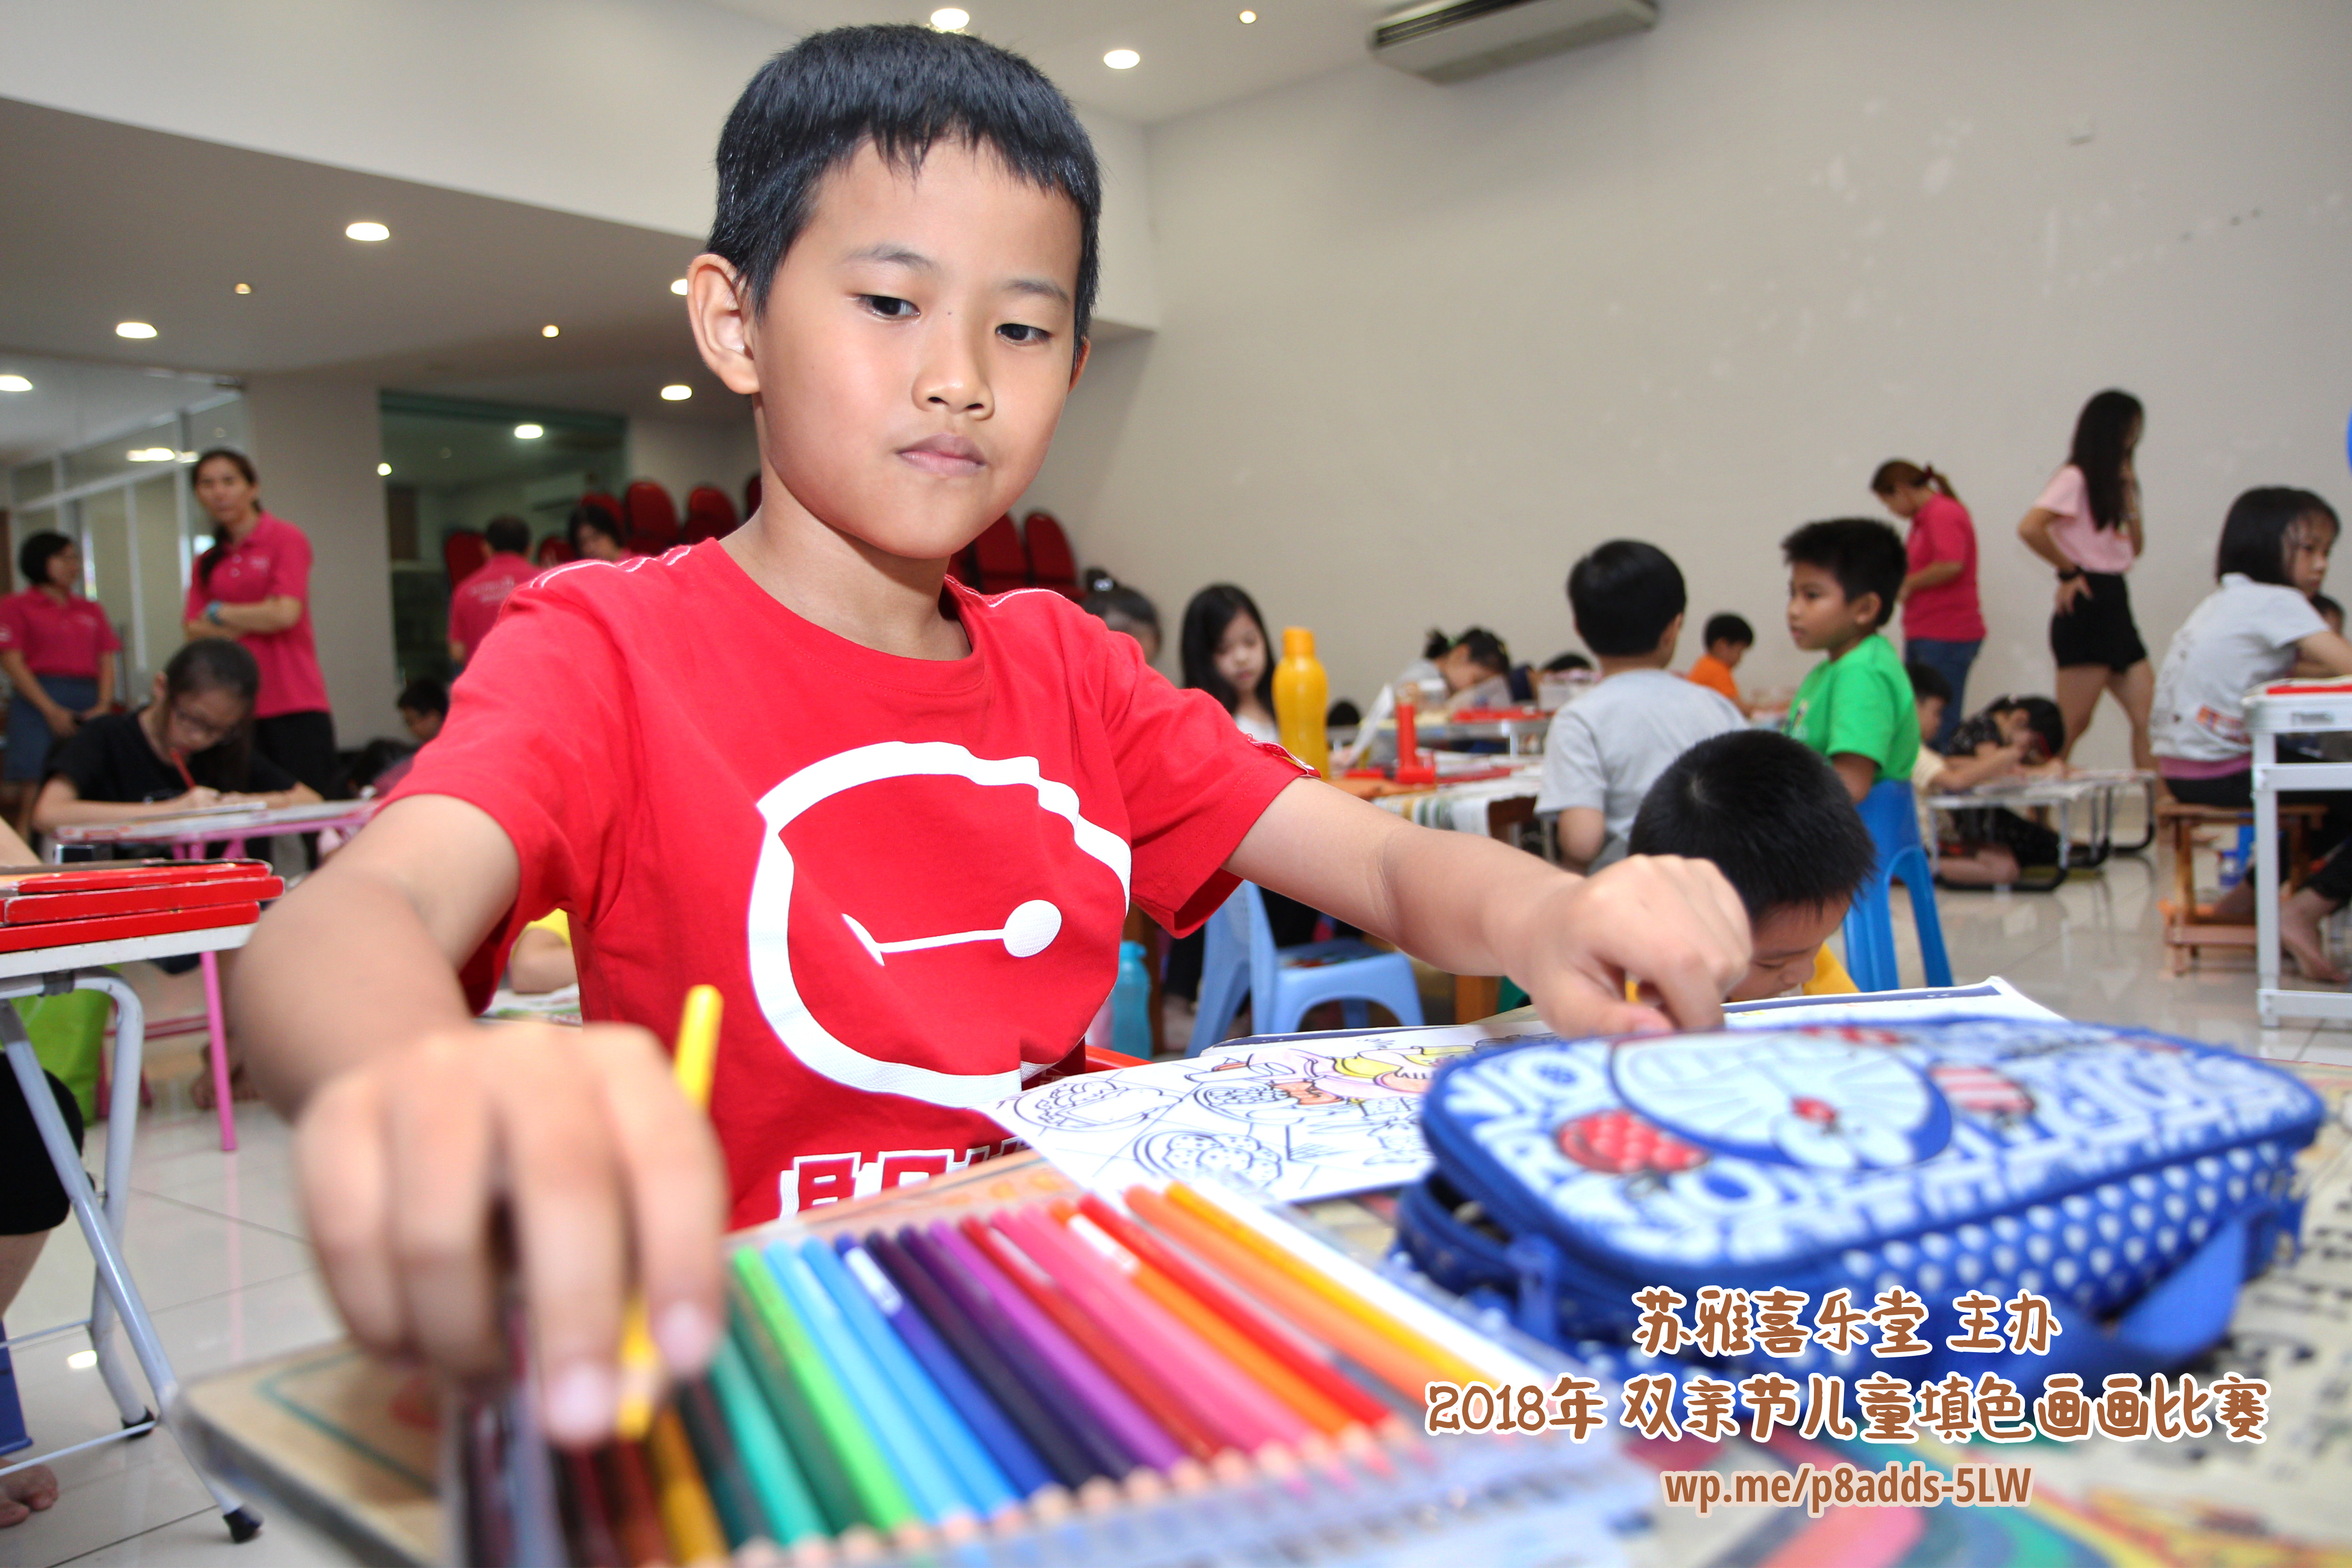 Batu Pahat Gereja Joy Soga Colouring Contest 苏雅喜乐堂主办2018年 峇株巴辖双亲节儿童填色画画比赛 培养儿童对彩色画画的兴趣 发掘美术的潜能 B1-19